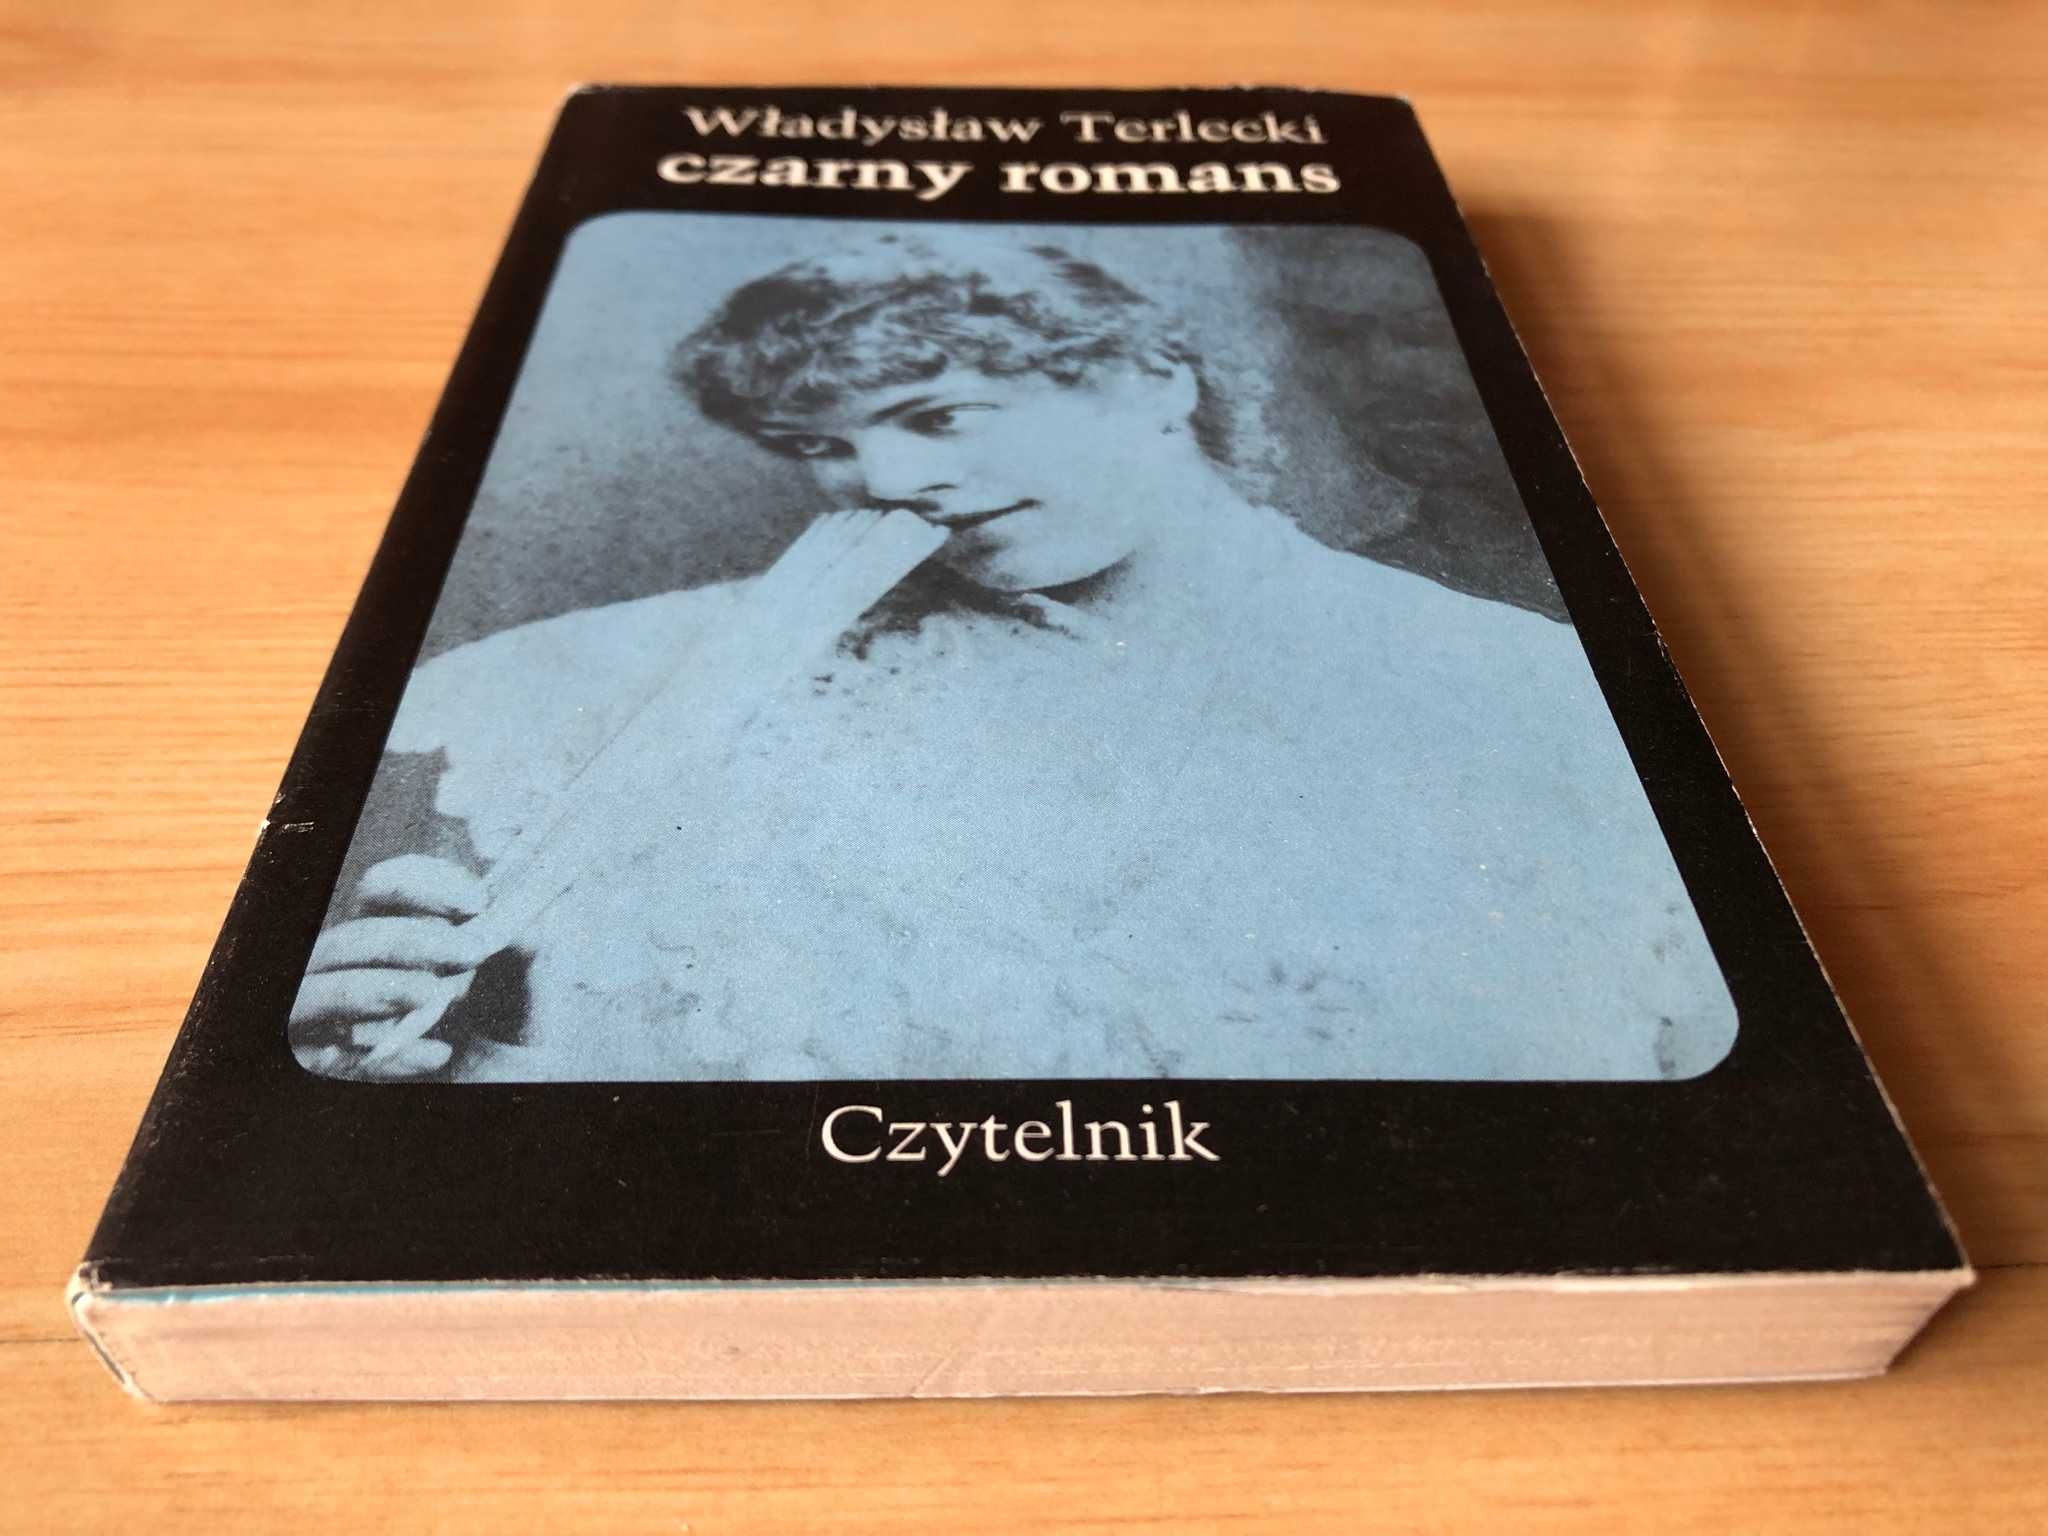 Czarny romans (1976) - Władysław Terlecki